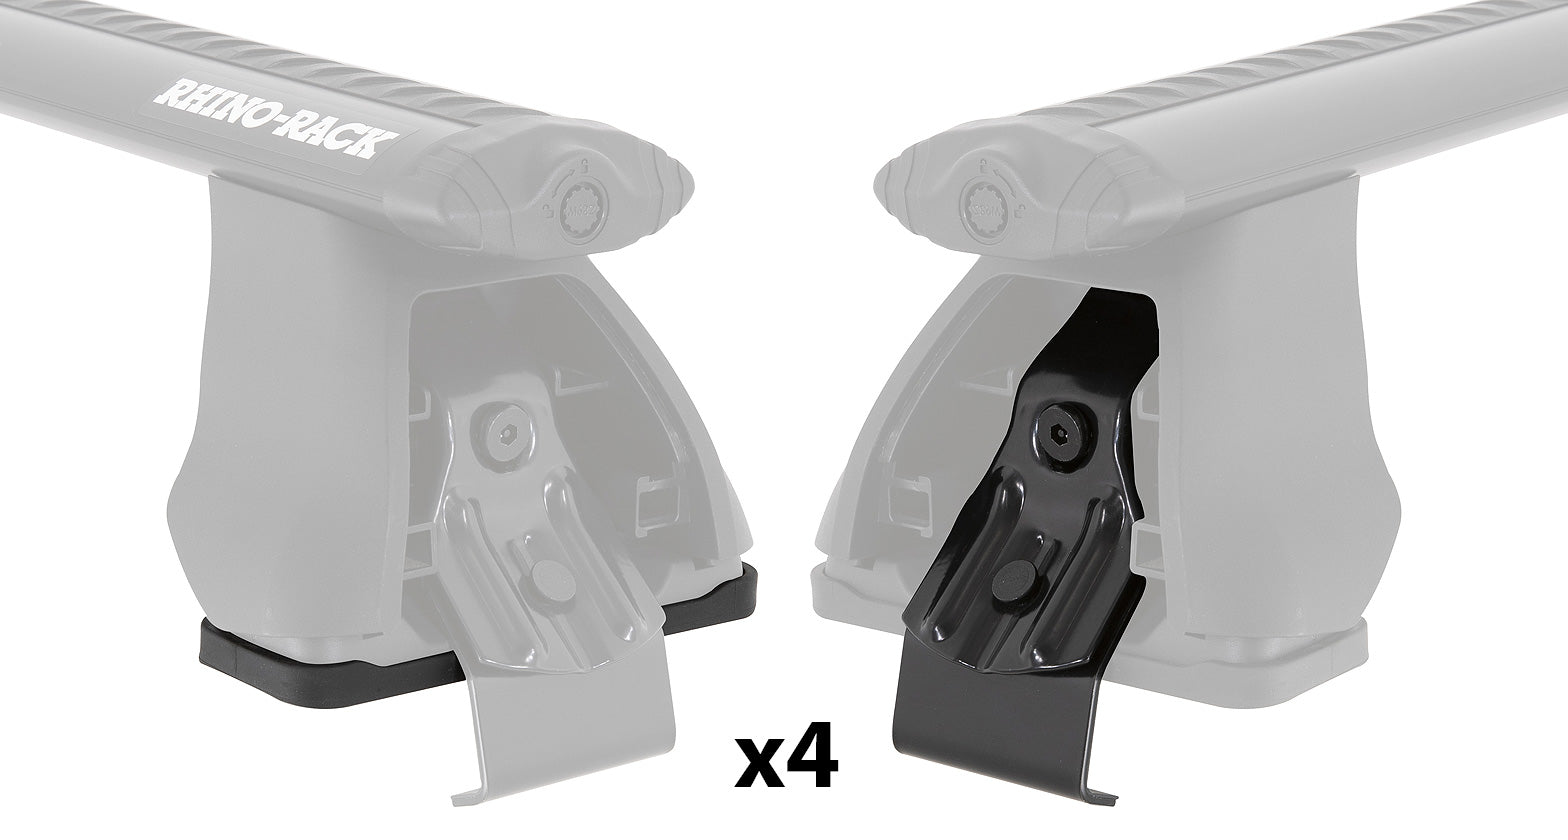 PAD & CLAMP KIT FOR RHINO 2500 MULTI FIT - DK181